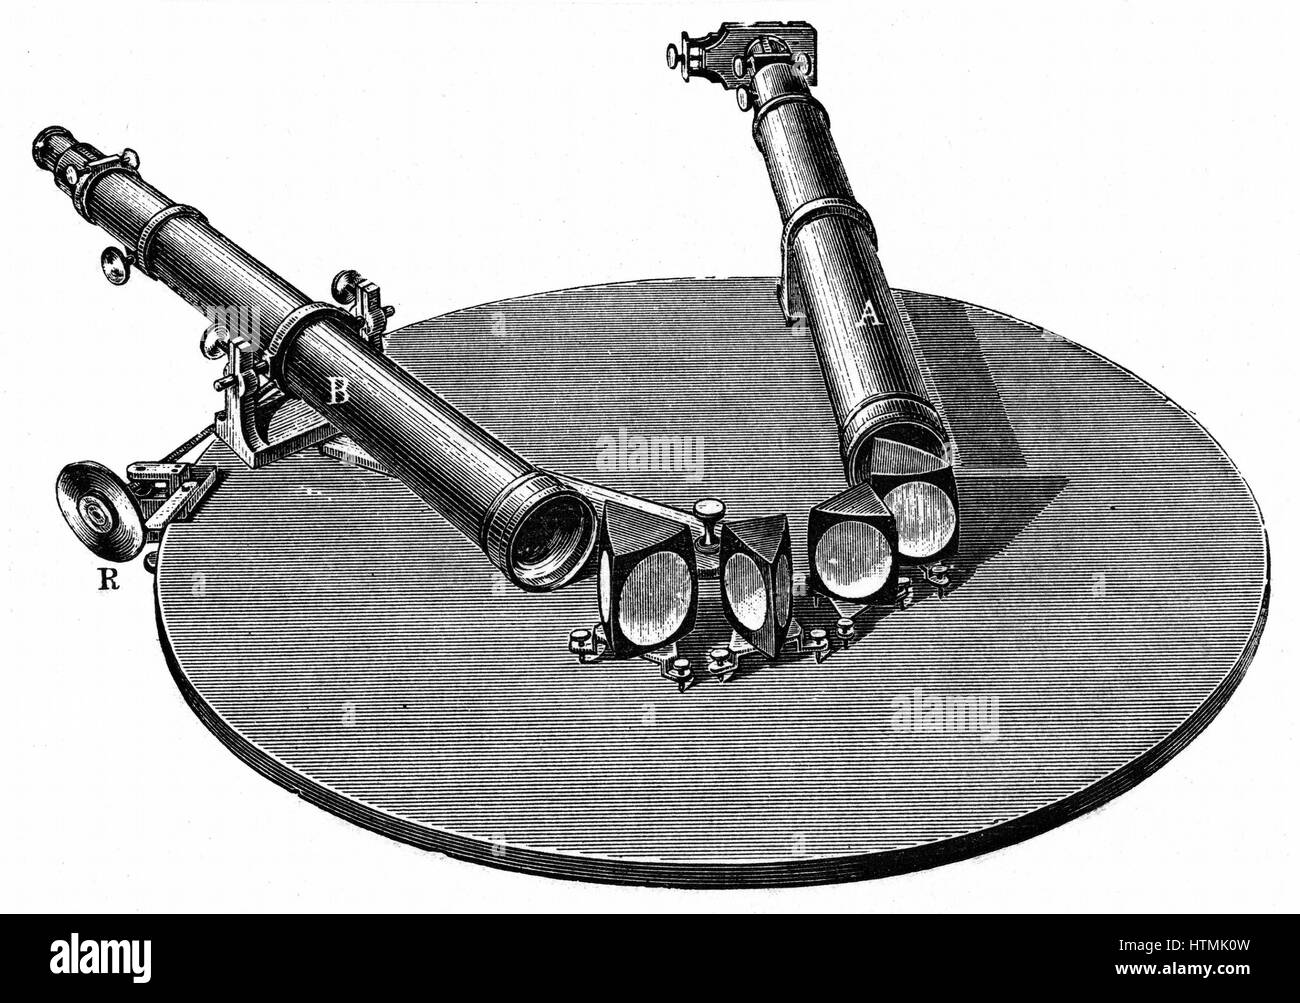 Spektroskop, 1872. Instrument des Typs in den 1850er Jahren von Robert Bunsen (1811-1899) und Robert Kirchhoff (1824-1887) entwickelt. Ihre Arbeit lieferte ein präzises Werkzeug, um Nutzen von Joseph von Fraunhofer (1787-1826) Observatians von dunklen Linien in der so Stockfoto